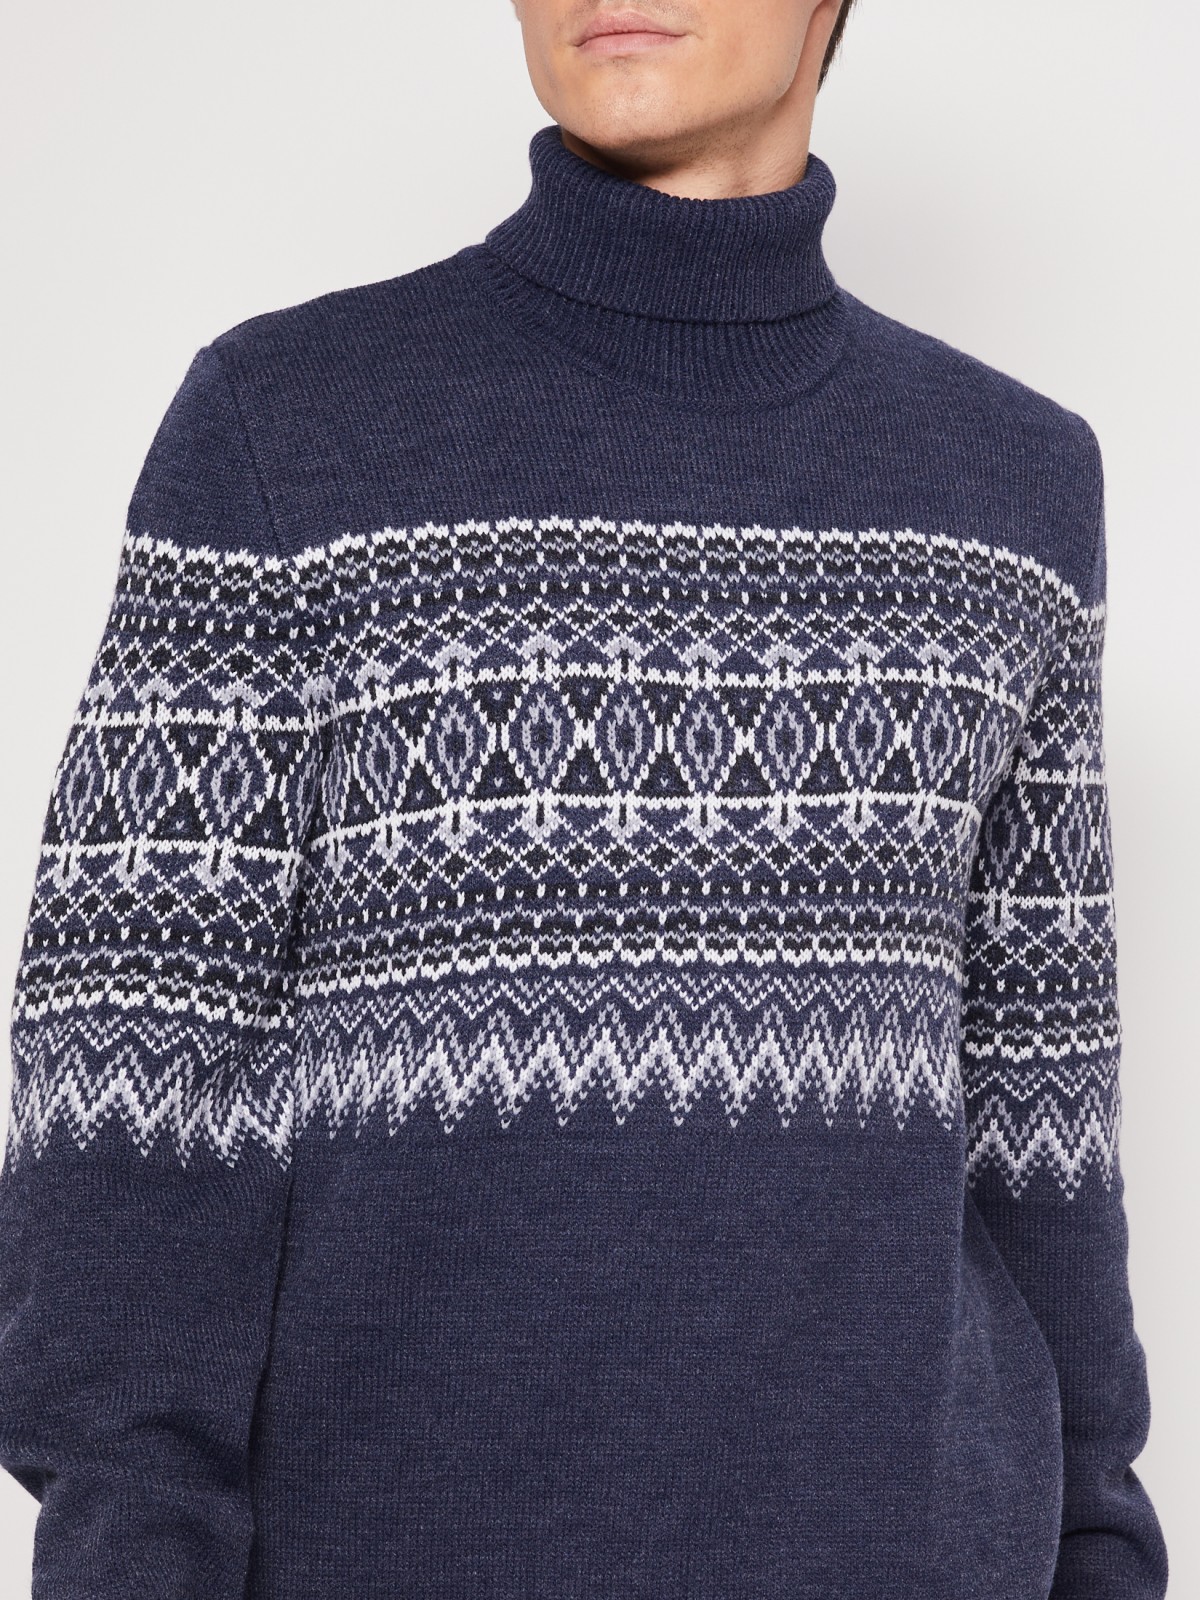 Вязаный свитер с узором zolla 011436143503, цвет голубой, размер S - фото 6